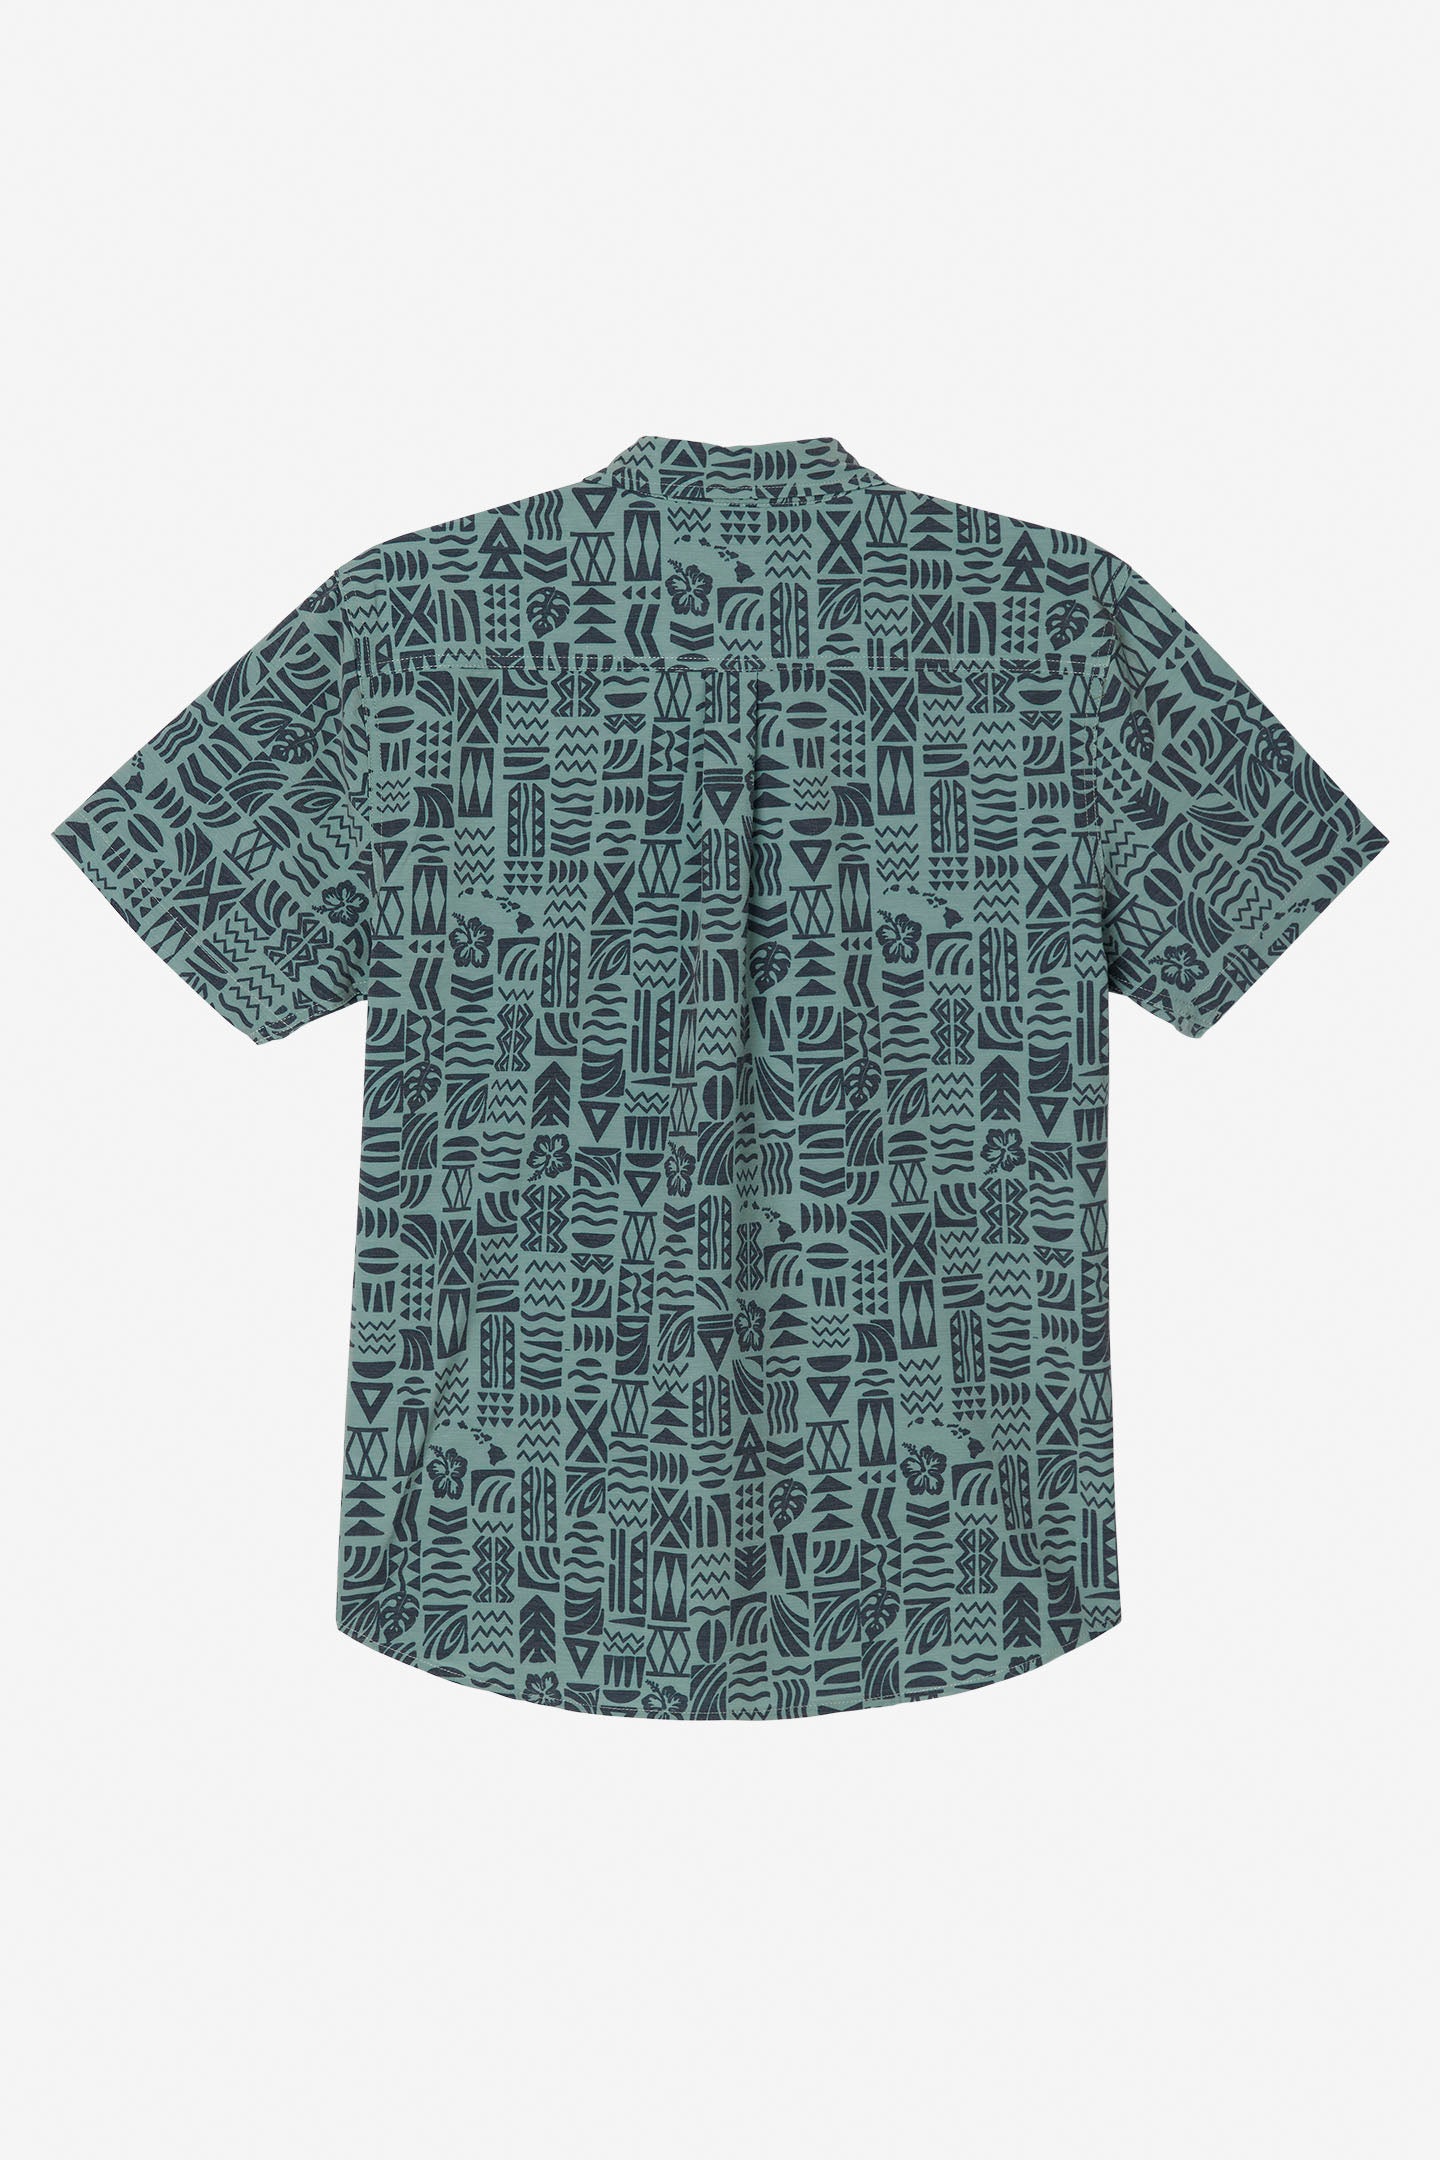 TRVLR Upf Traverse Hawaii Standard Fit Shirt - Sage | O'Neill